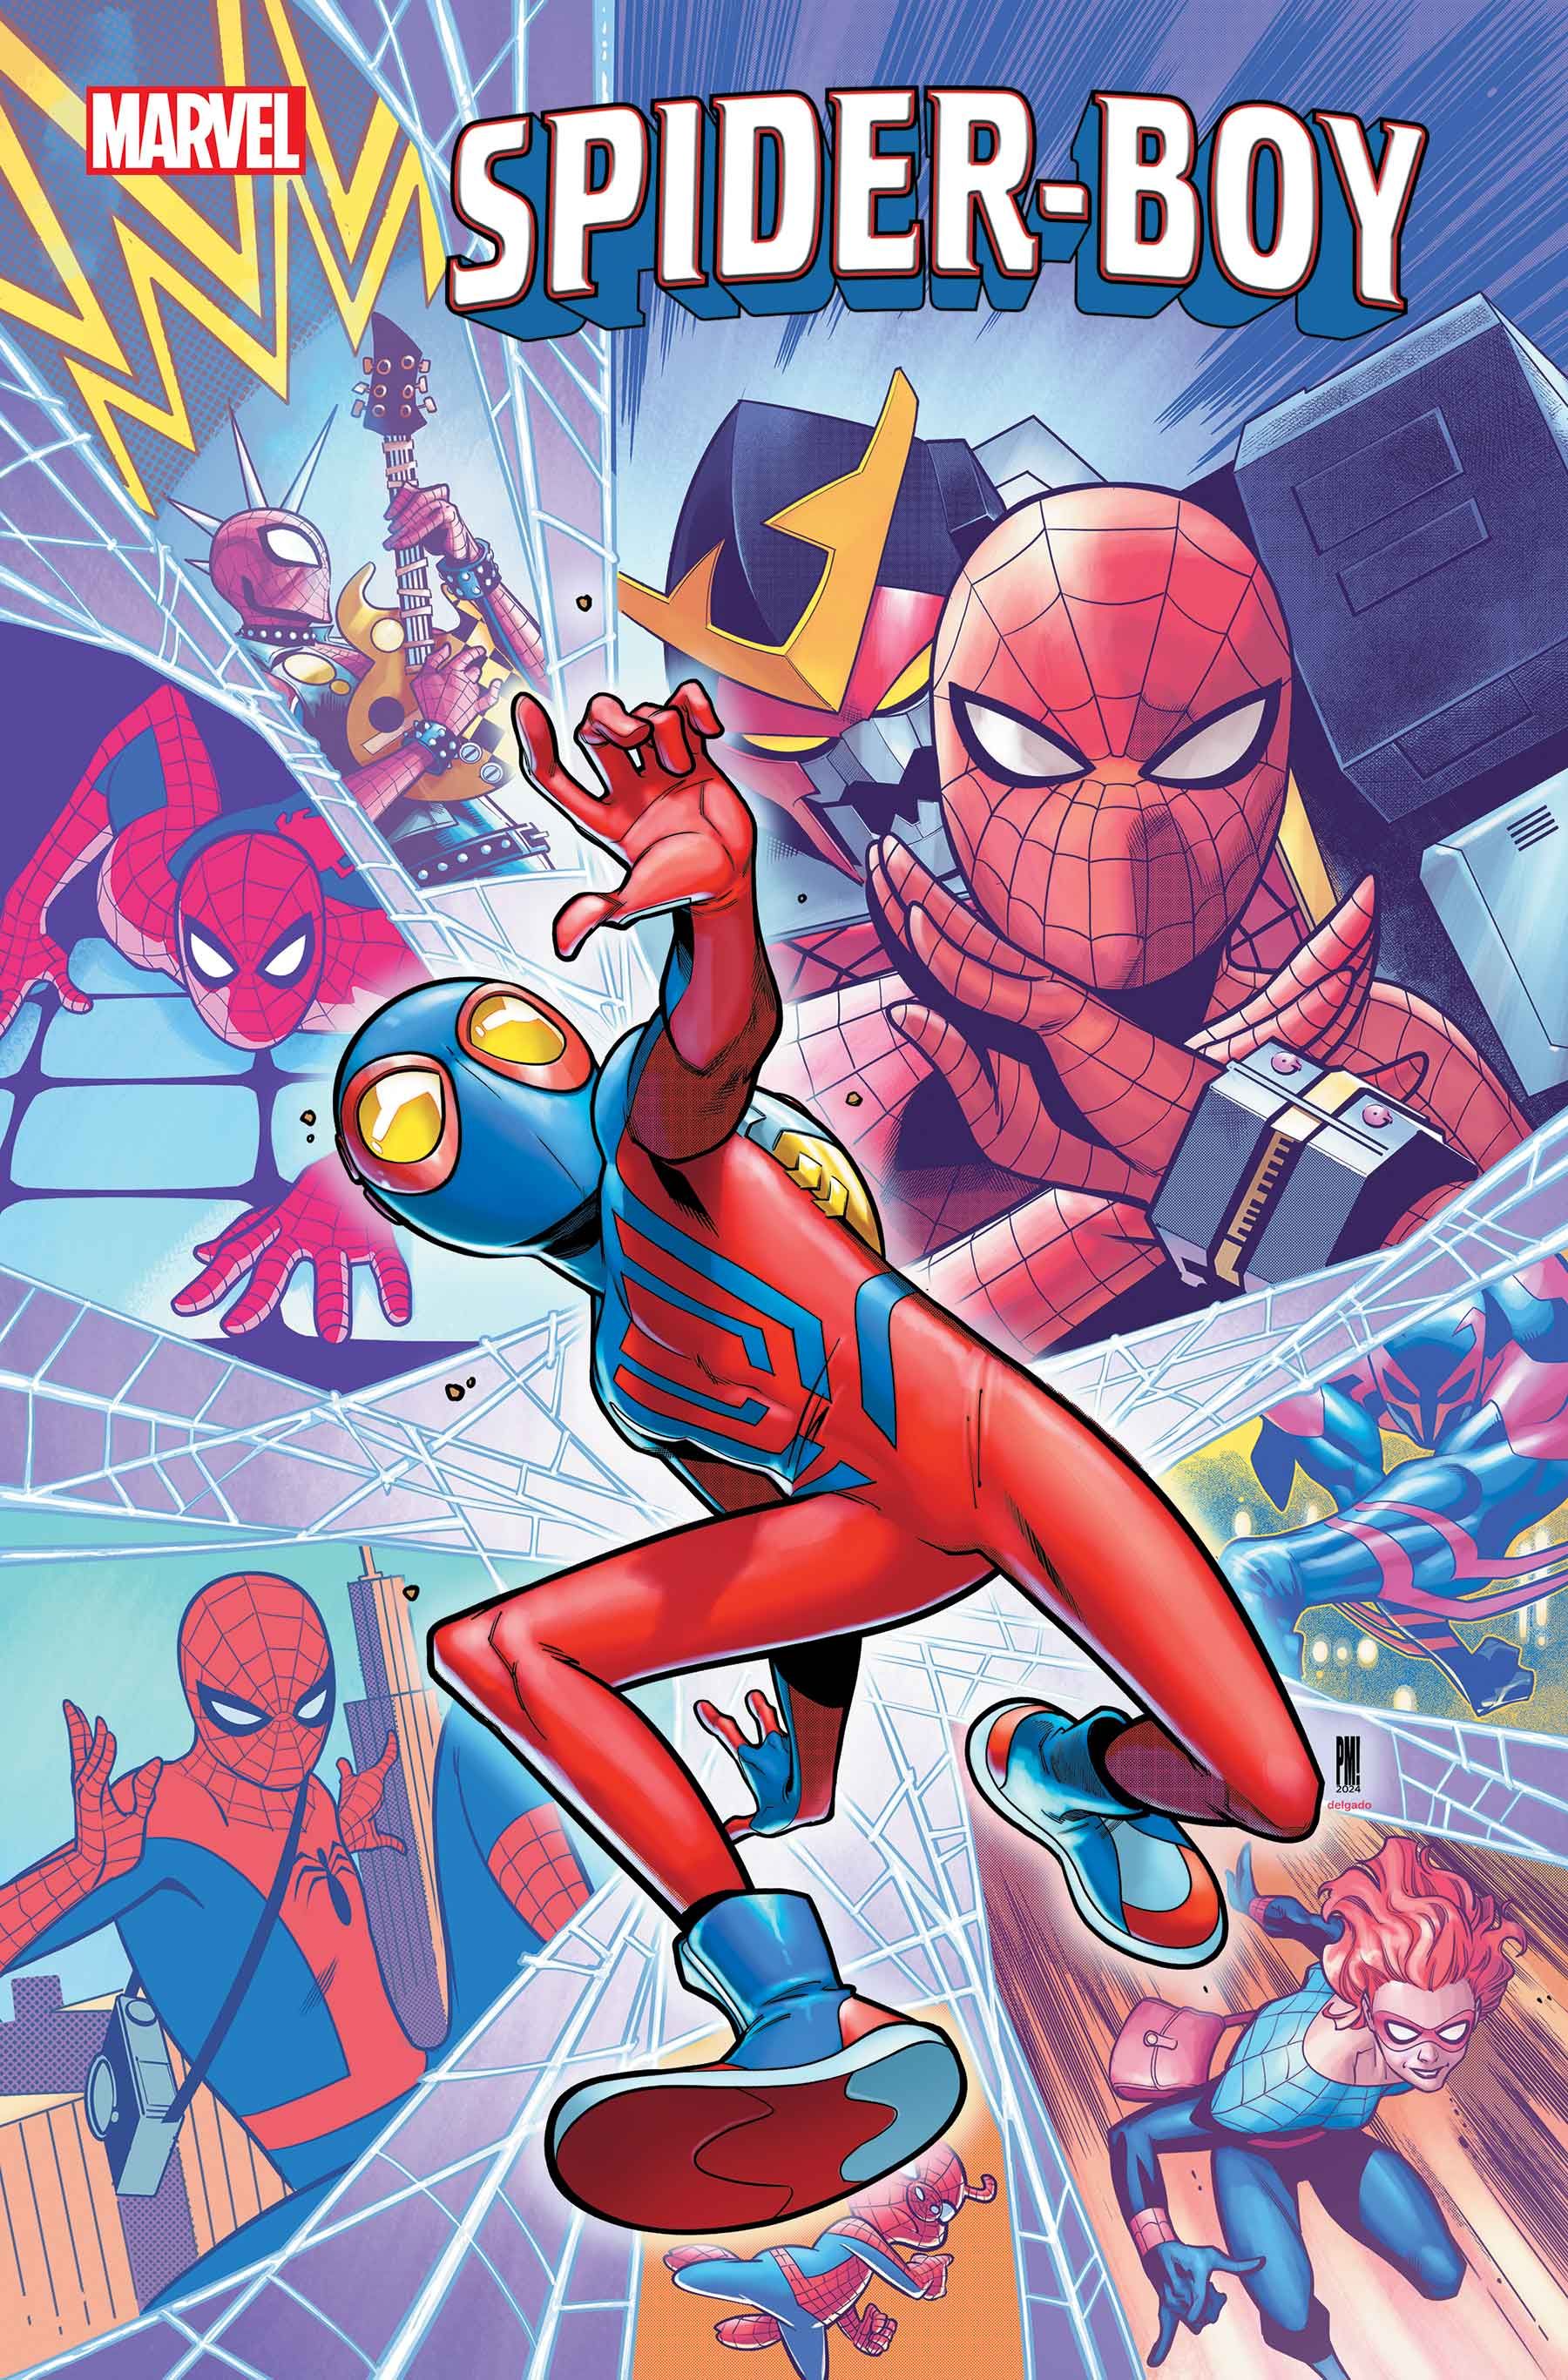 Capa do Spider-Boy #9, apresentando uma colagem de Spider-Heroes multiversais, enquanto o Spider-Boy entra em ação.